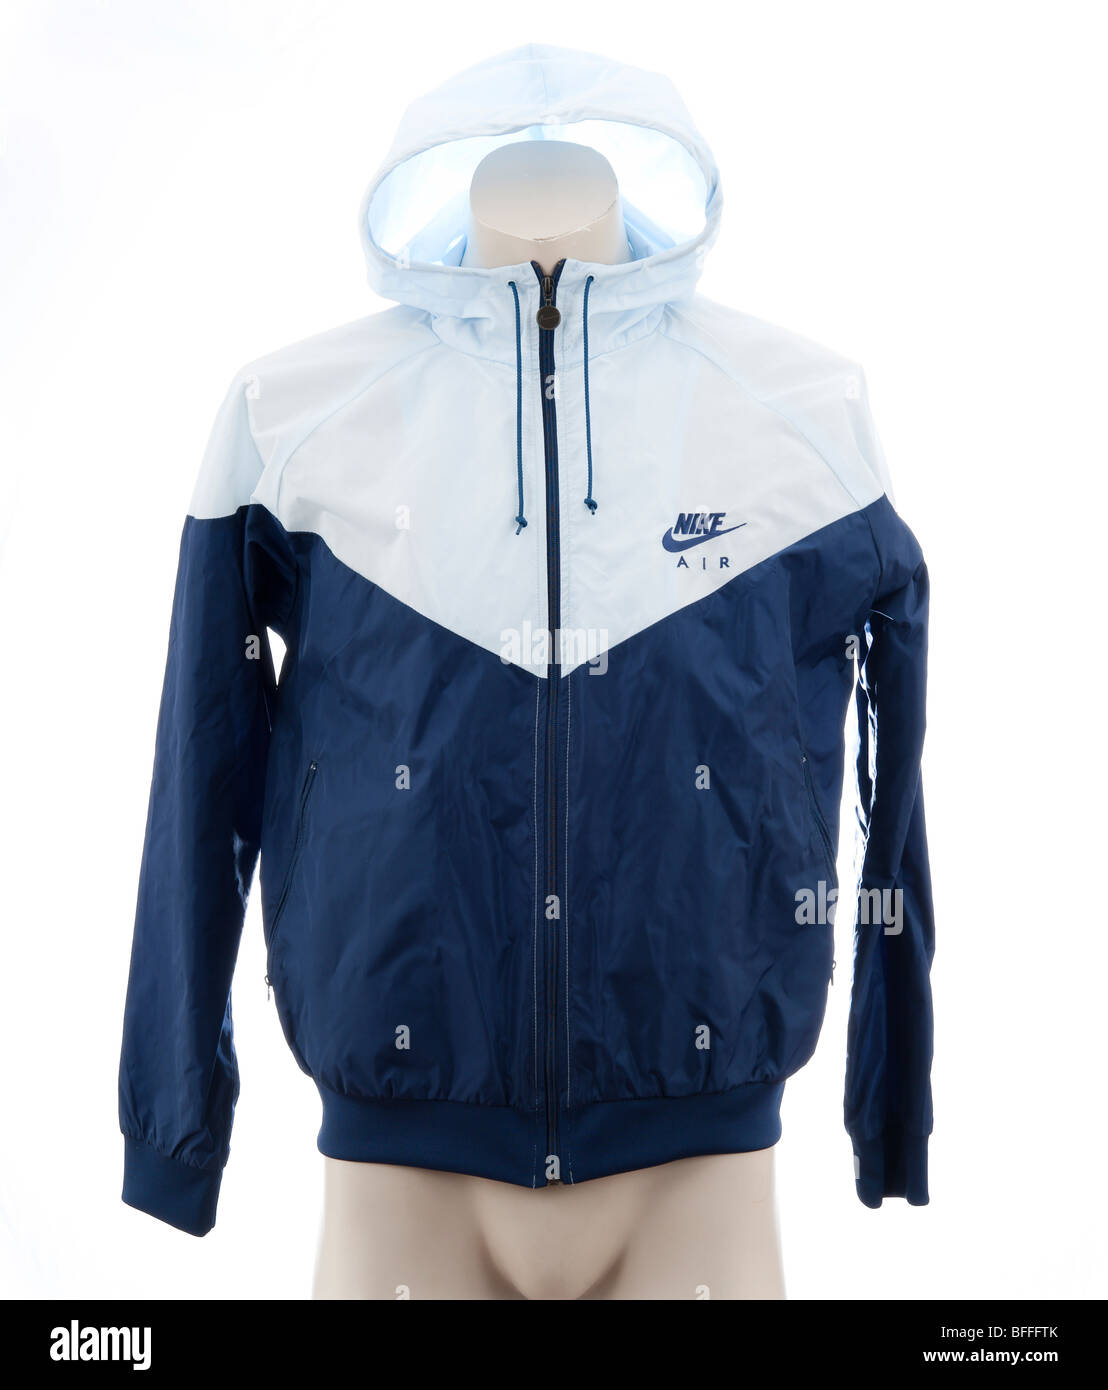 Nike Windrunner mens Jacke, Regenjacke, regen Jacke Anorak. Ein nylon Full  Zip sportswear Jacke oft getragen von Jugendlichen und Scallies  Stockfotografie - Alamy